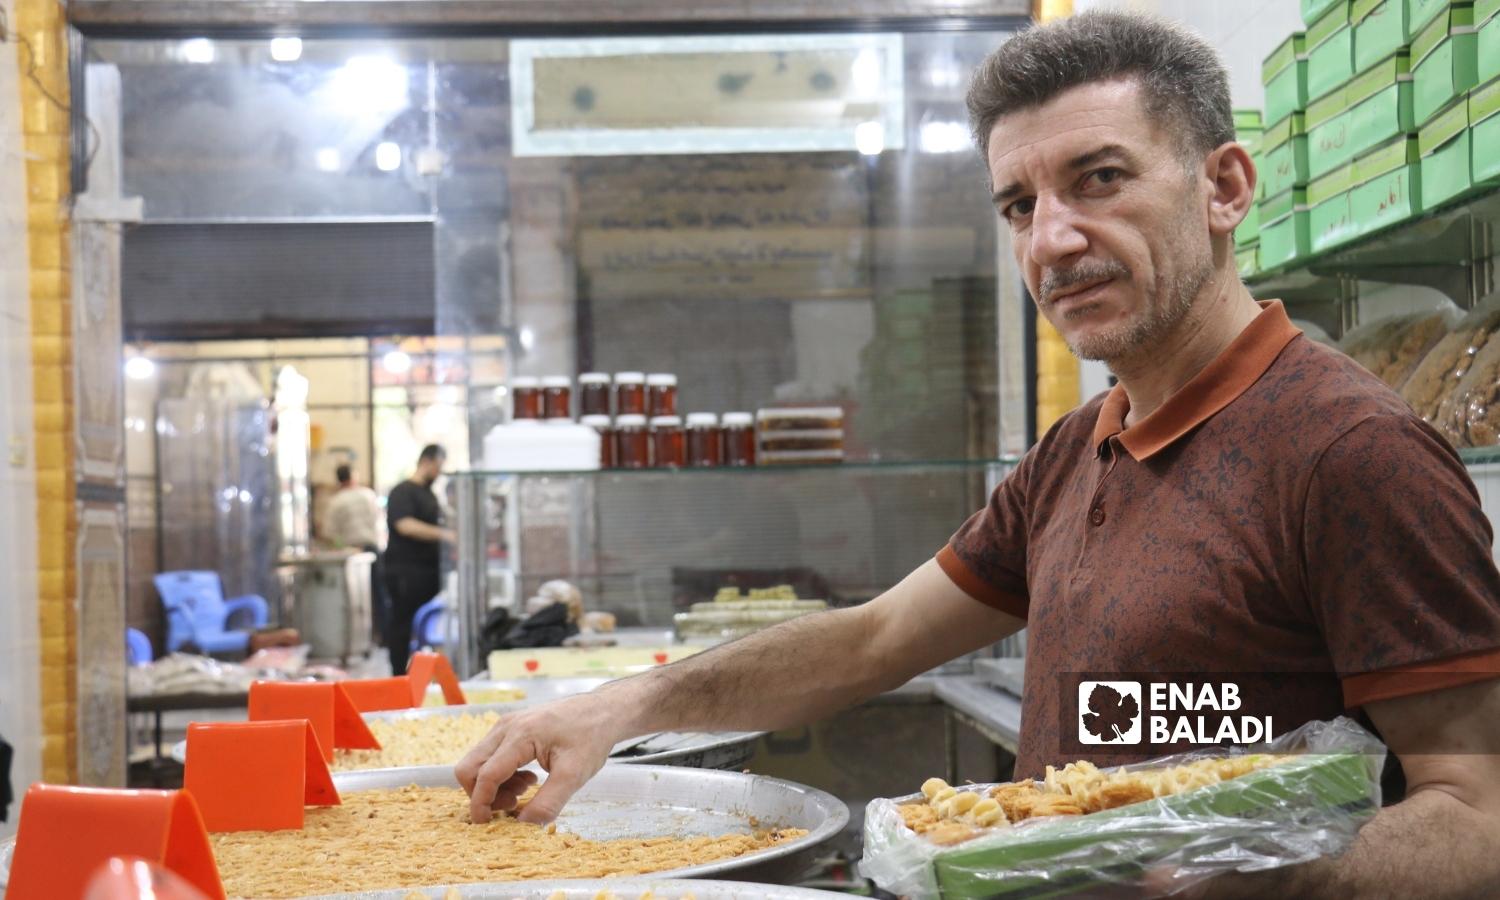  رجل يبيع الحلويات في السوق المسقوف بمدينة إعزاز بريف حلب الشمالي - 2 أيلول 2022 (عنب بلدي / ديان جنباز)